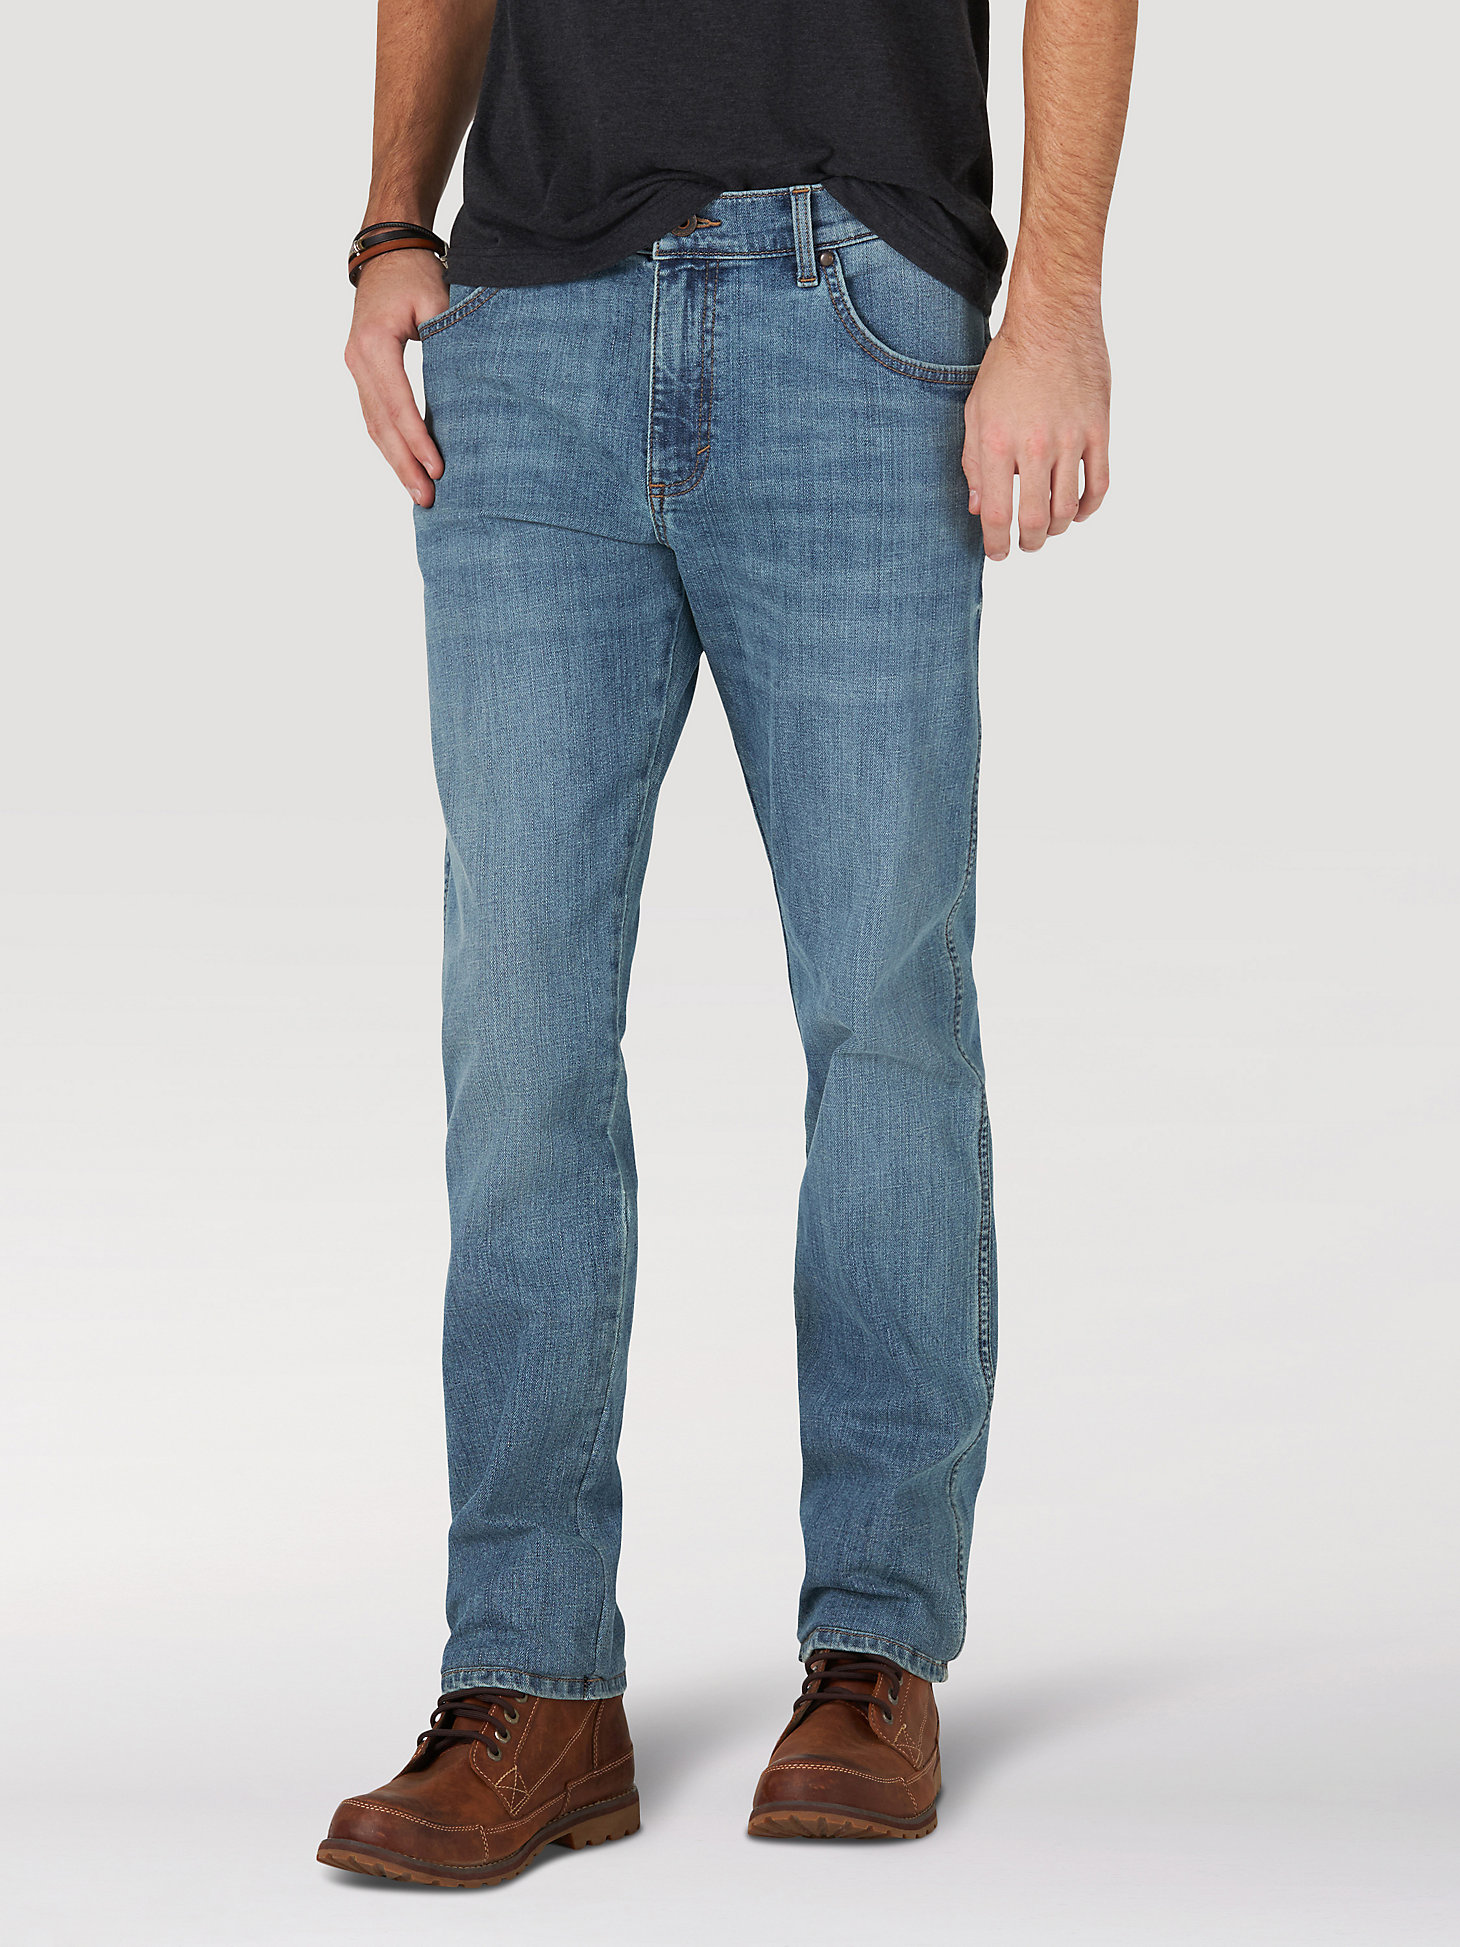 Men's Wrangler® Slim Straight Jean in Weft main view